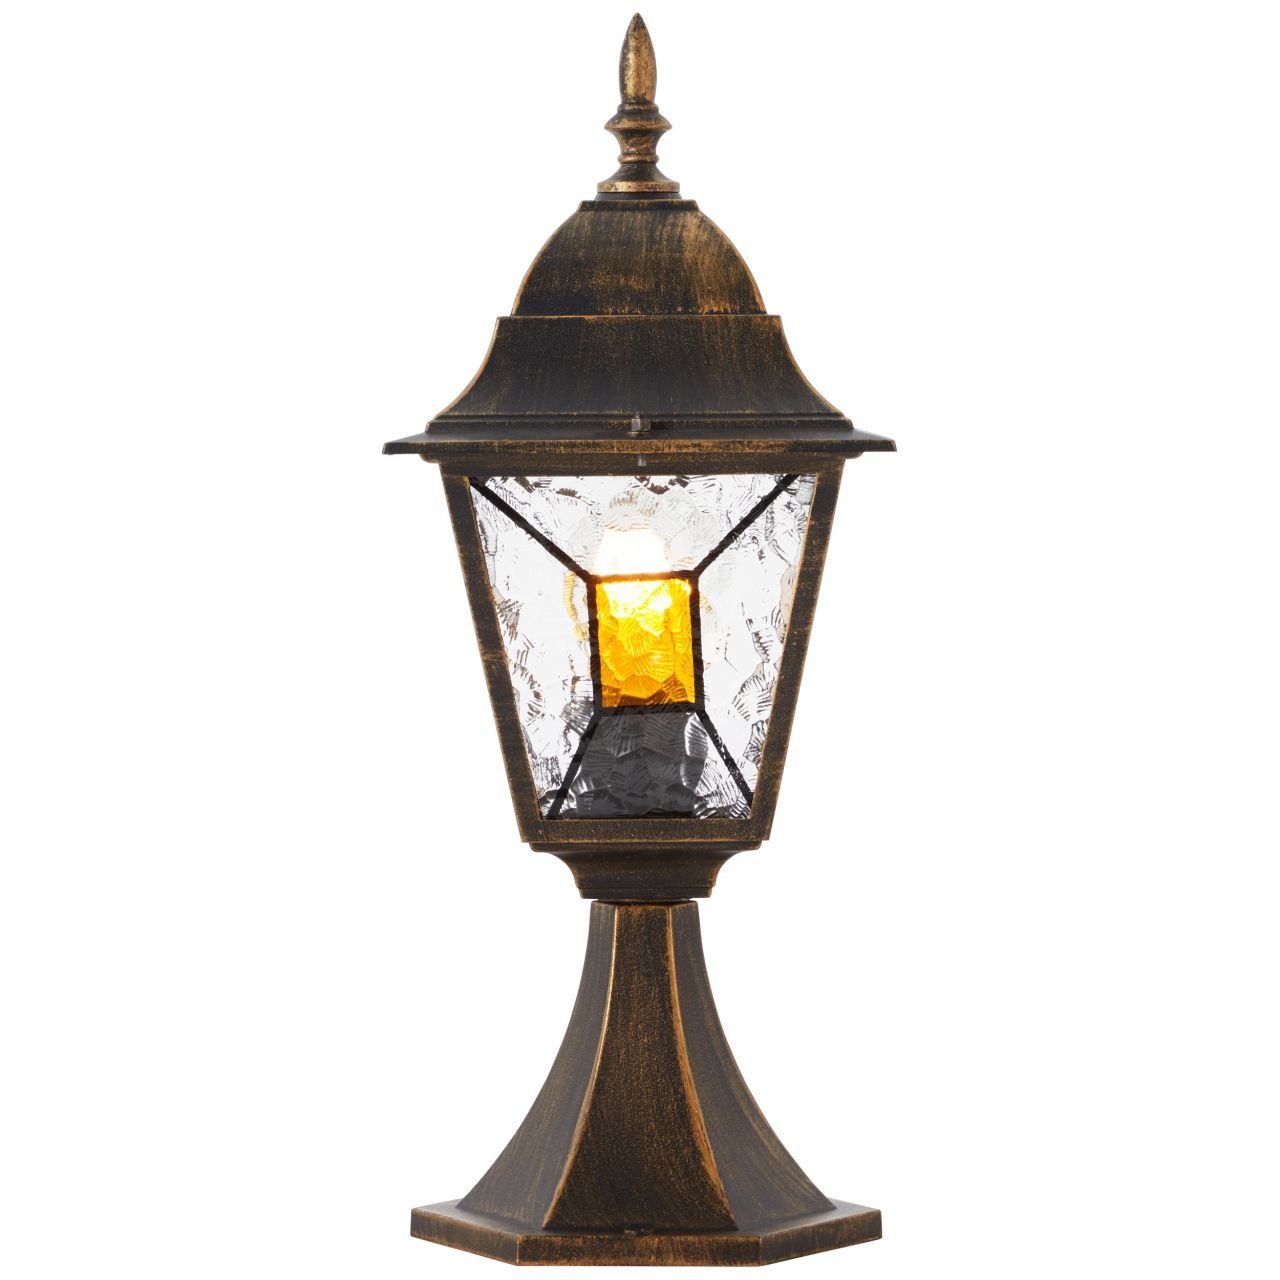 Brilliant Außen-Stehlampe Janel, Janel Außensockelleuchte geeigne A60, 44cm 60W, E27, schwarz 1x gold